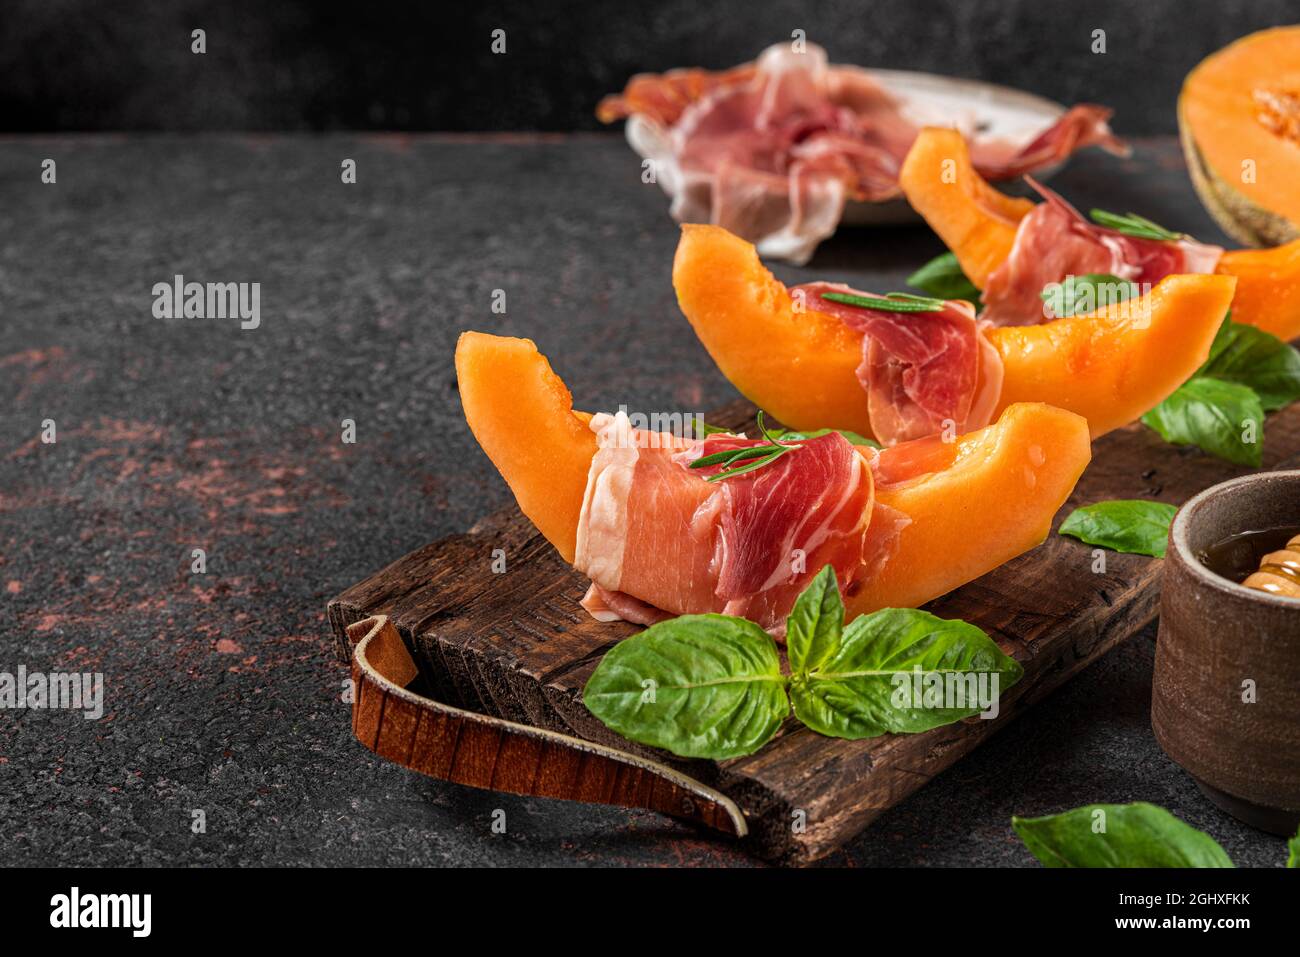 Prosciutto con fette di melone cantalupo, miele e basilico sul tagliere su sfondo scuro. Antipasto italiano. Cibo sano Foto Stock